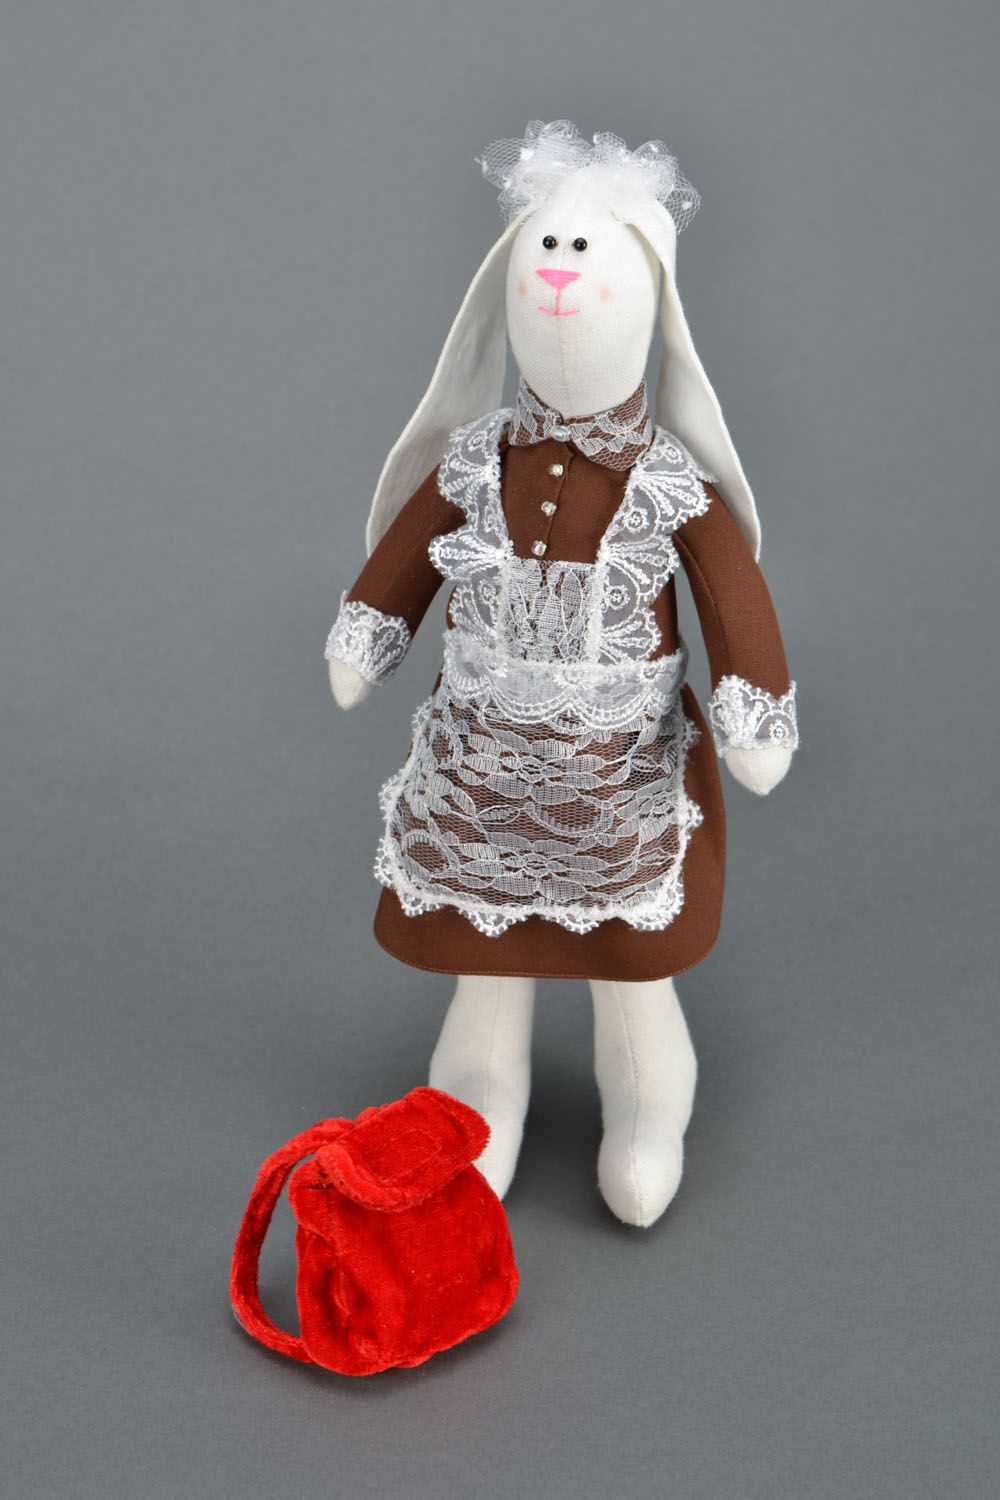 Bunny schoolgirl stuffed toy photo 1